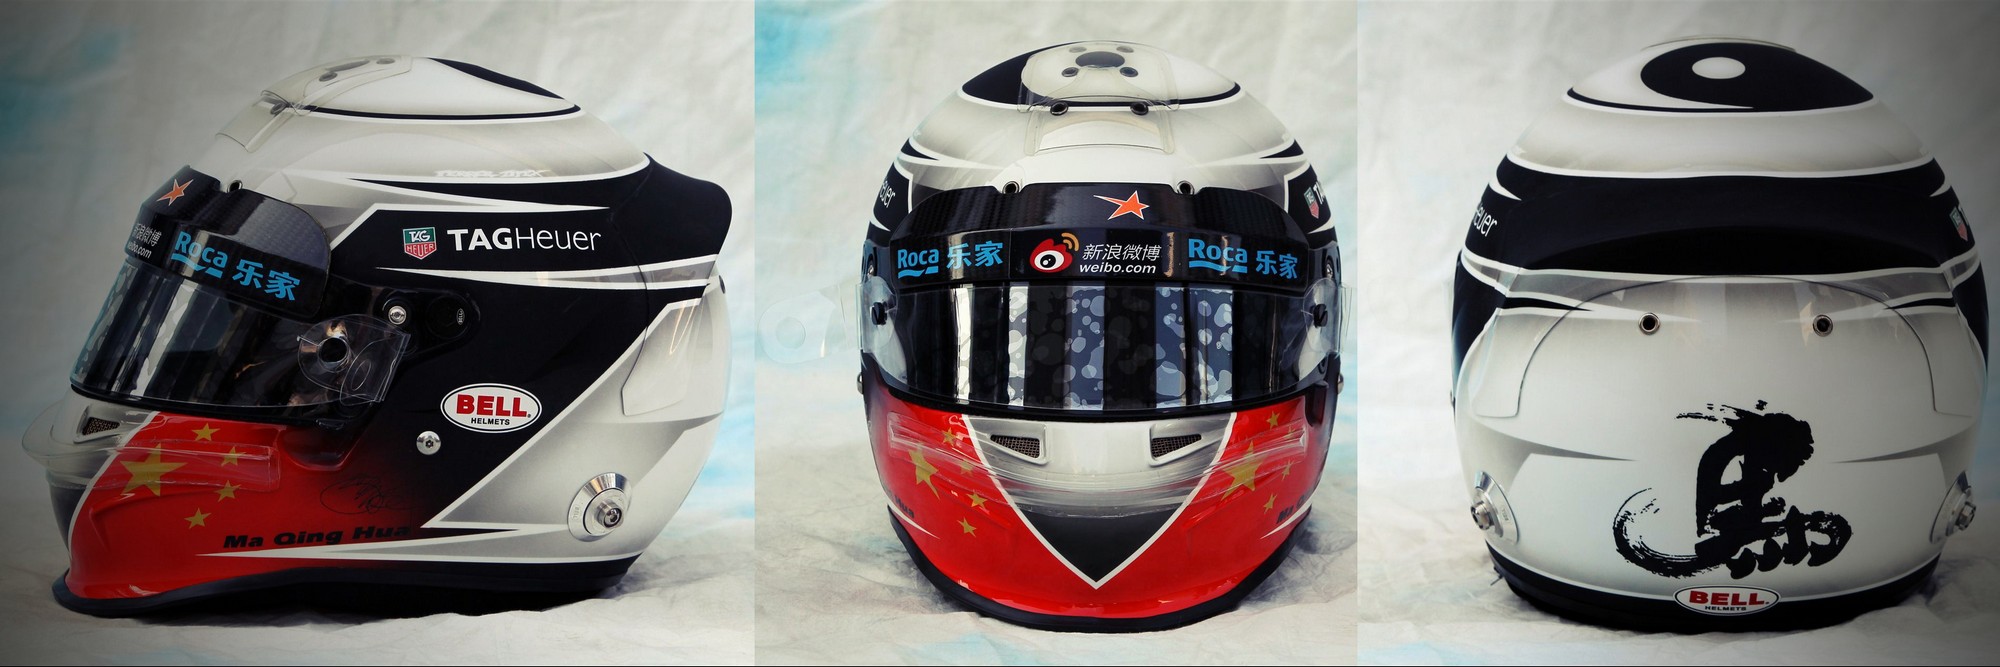 Шлем Ма Цин Хуа на сезон 2012 года | 2012 helmet of Qing Hua Ma